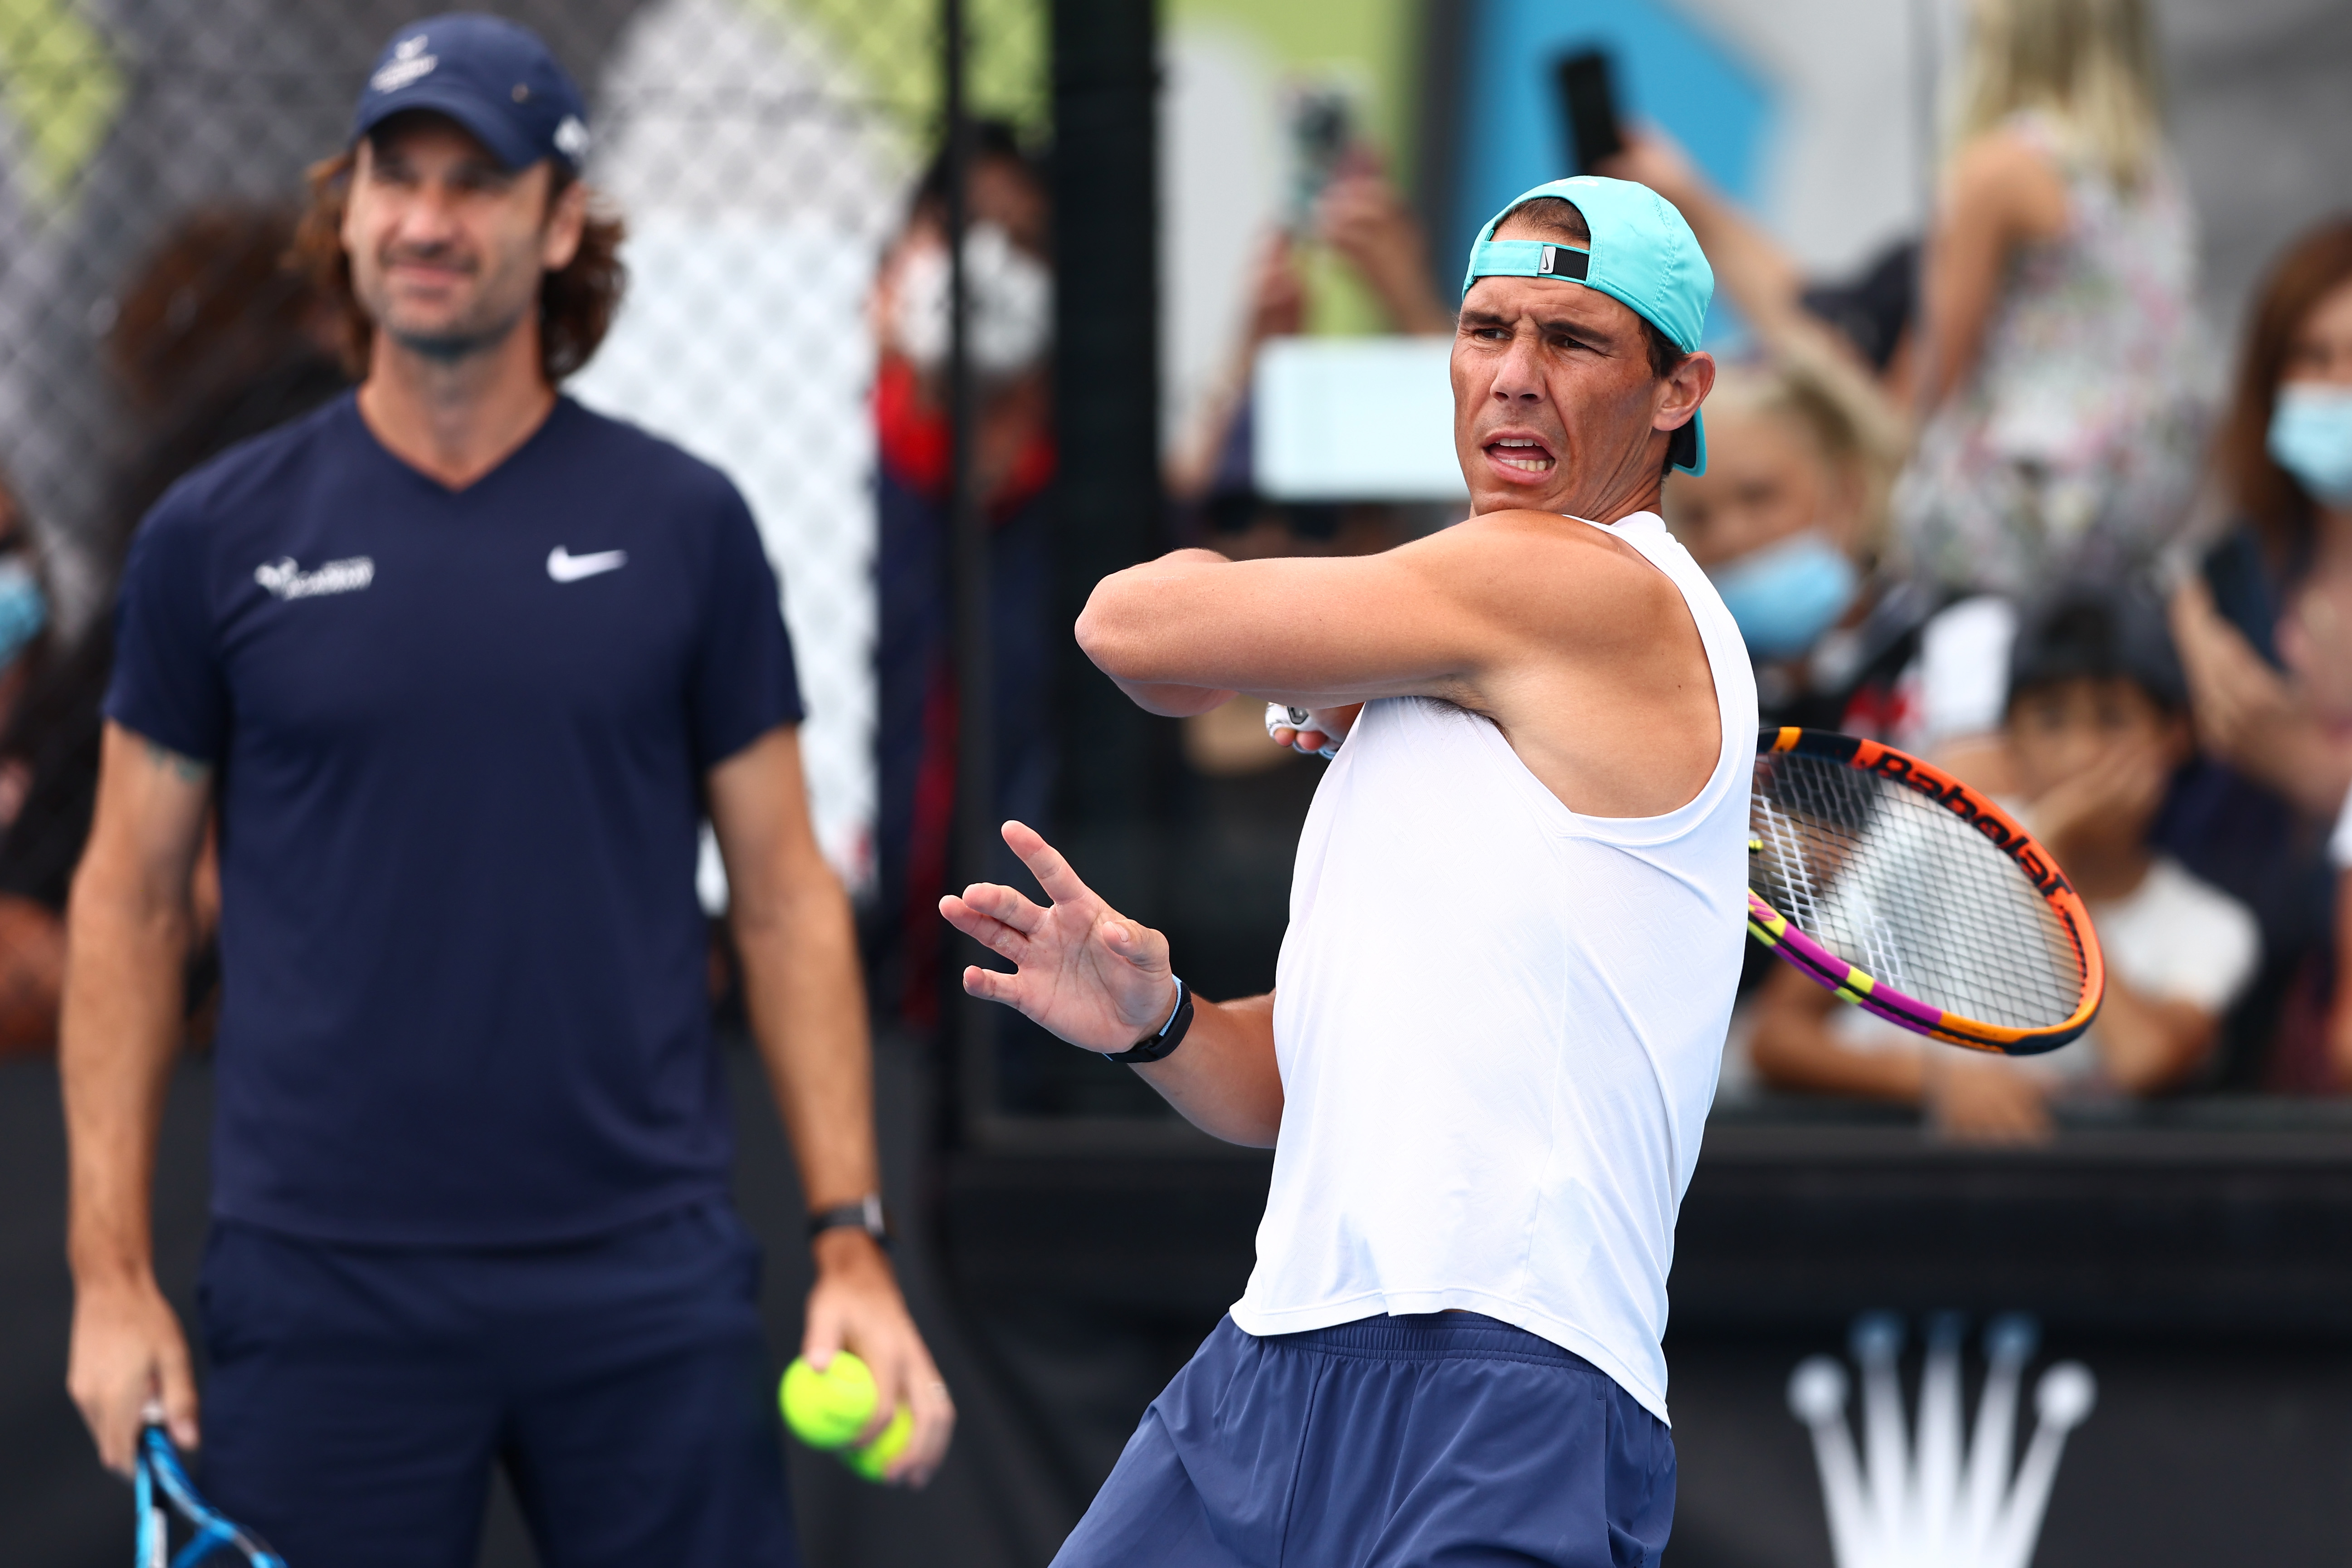 løfte forbrug der ovre Carlos Moya: Rafael Nadal motivated for more big wins after Australian Open  triumph